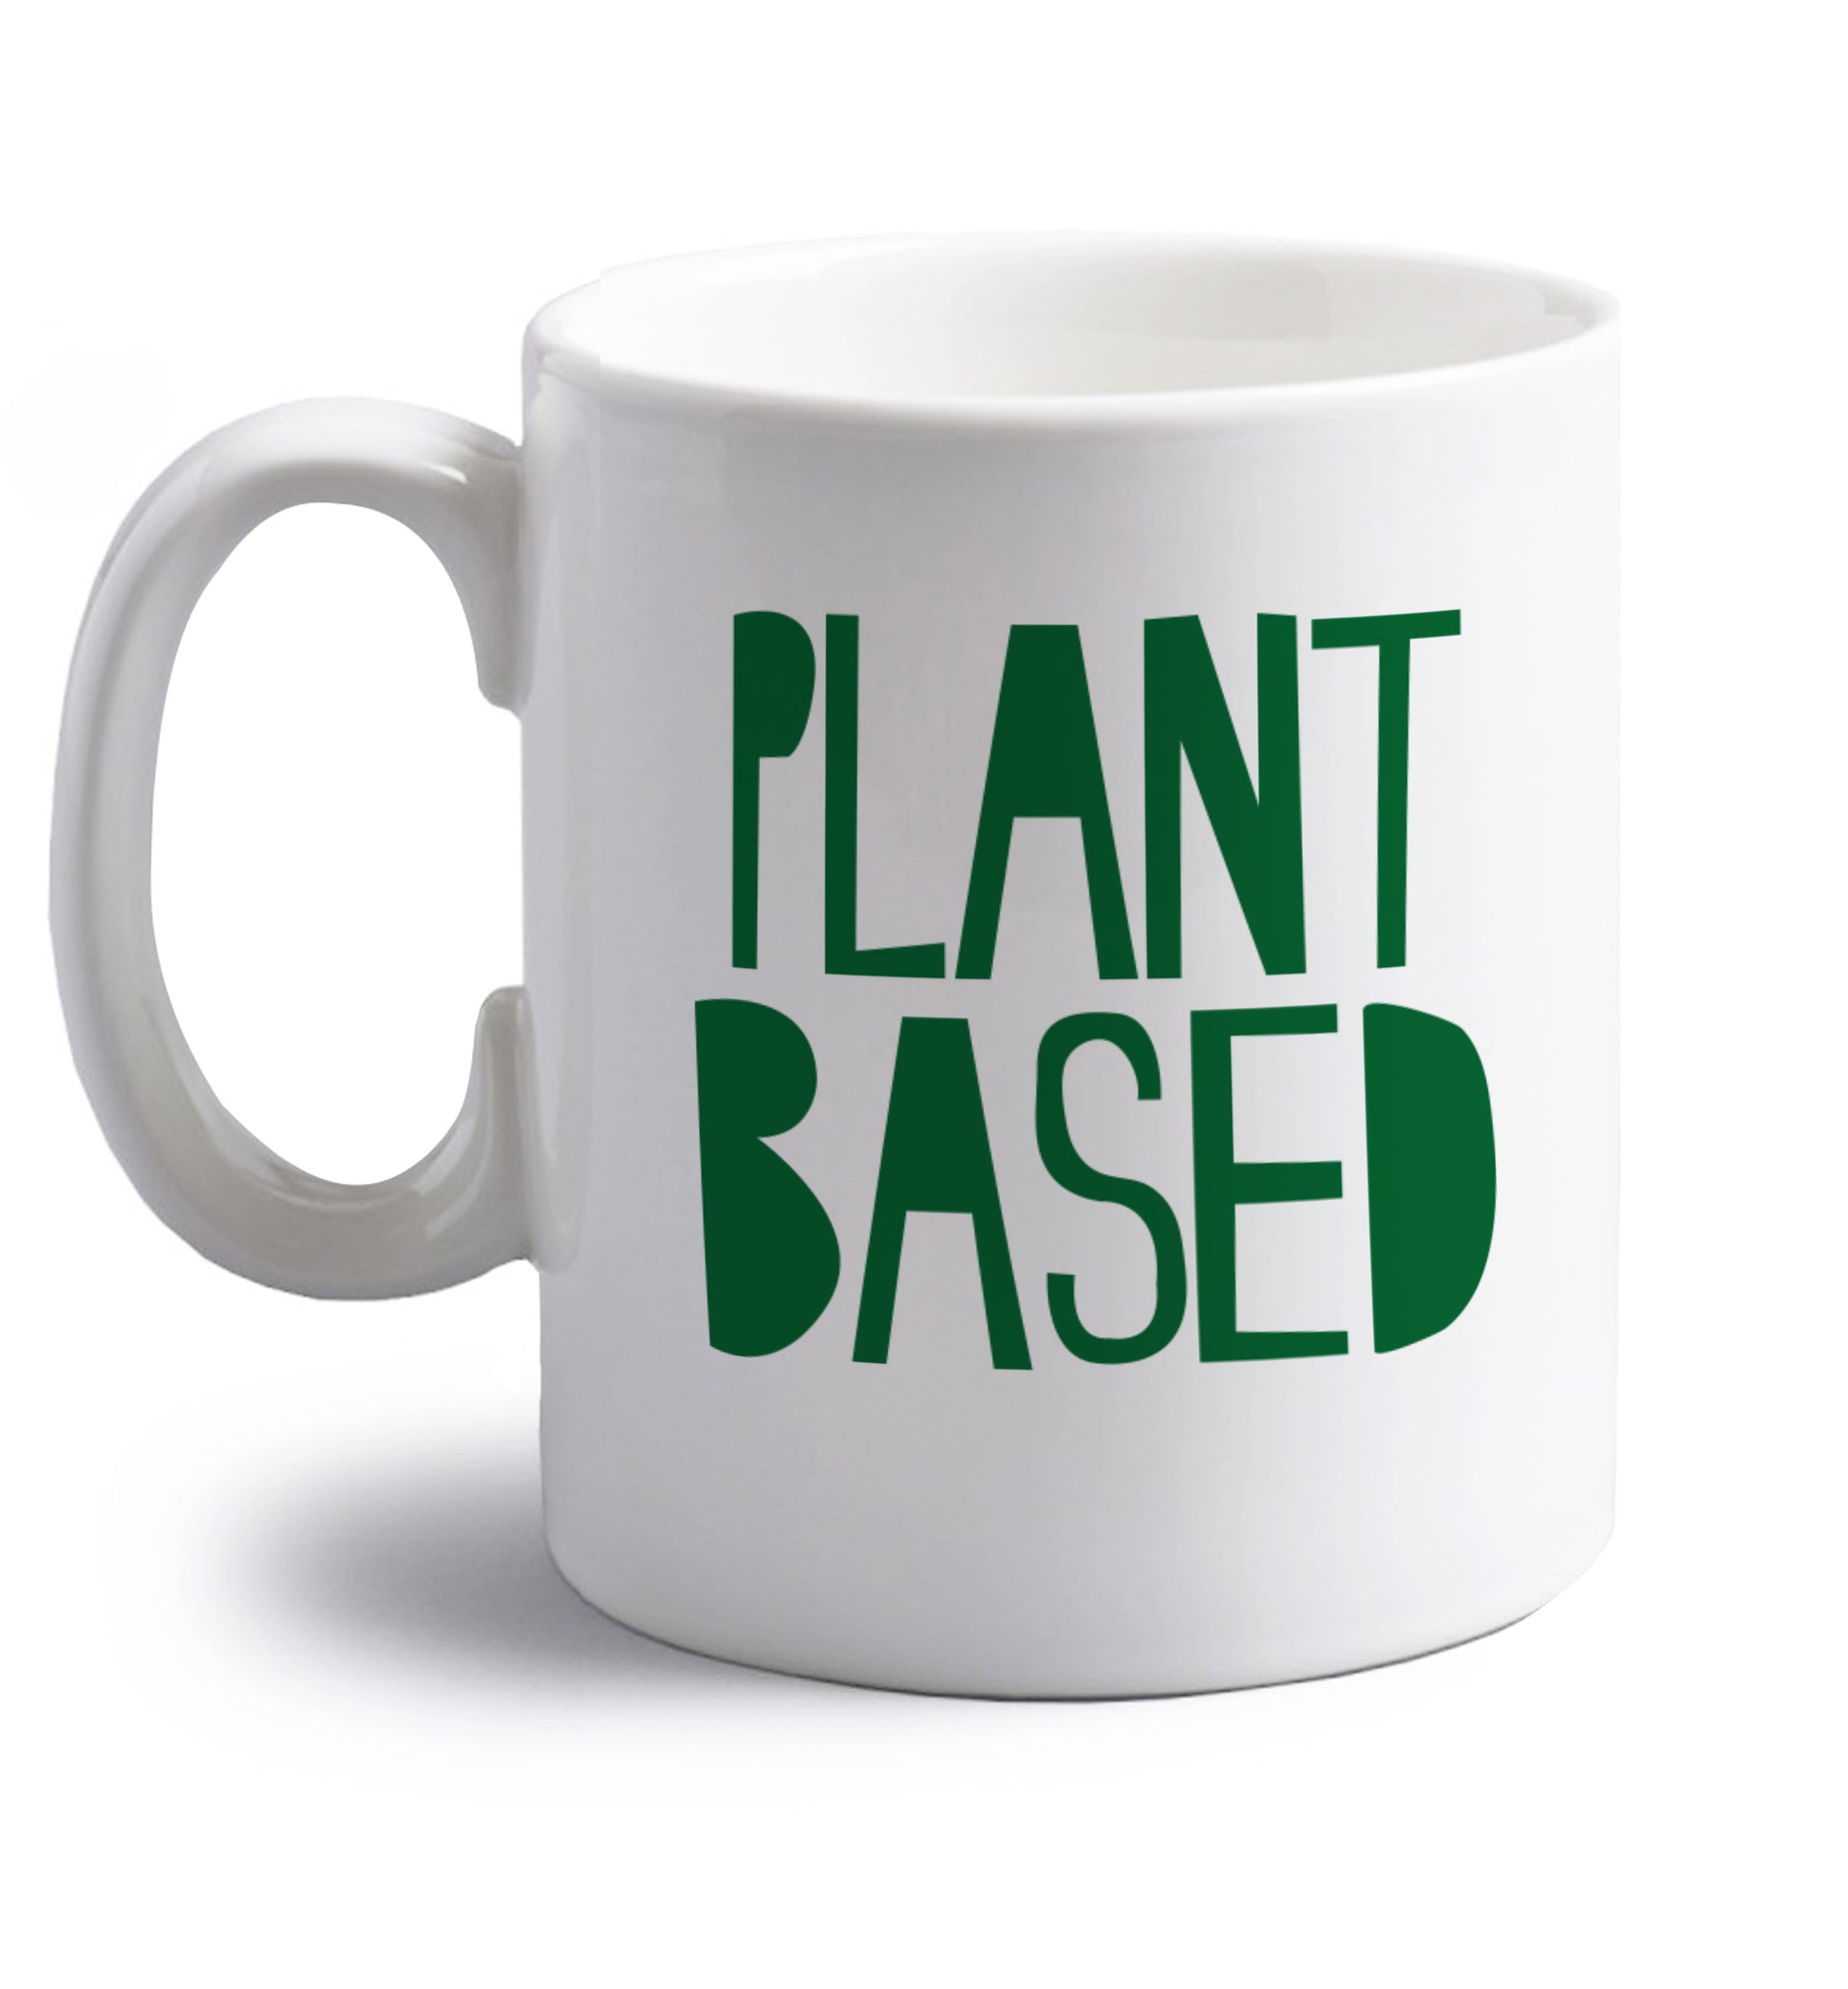 Plant Based right handed white ceramic mug 